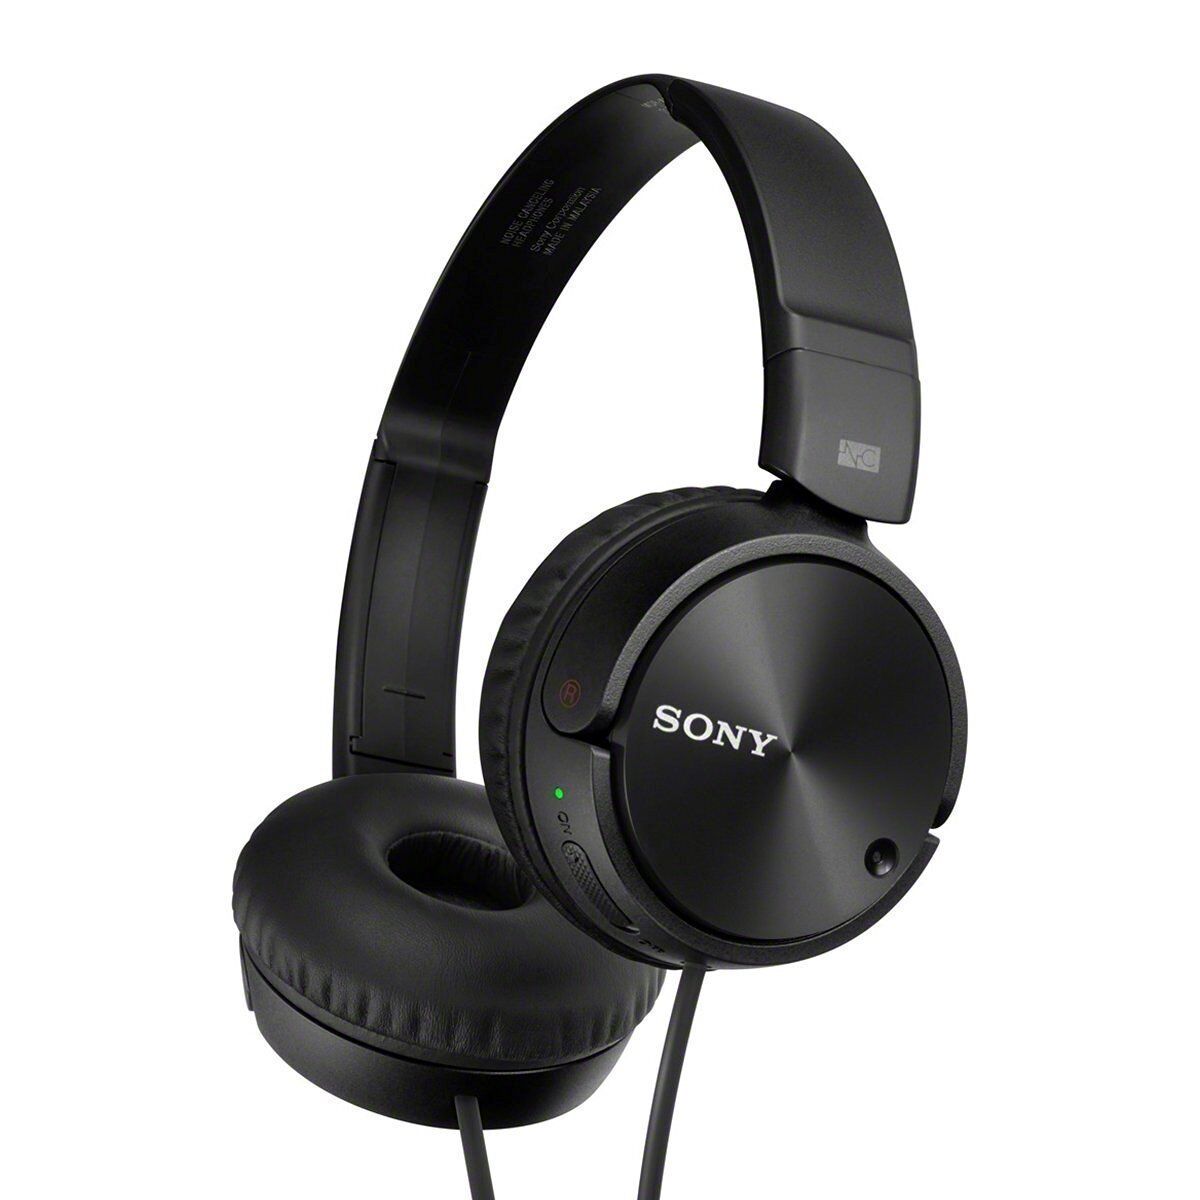 Sony Headphones Connectivity: Connecting Sony Headphones To Phone Via Bluetooth